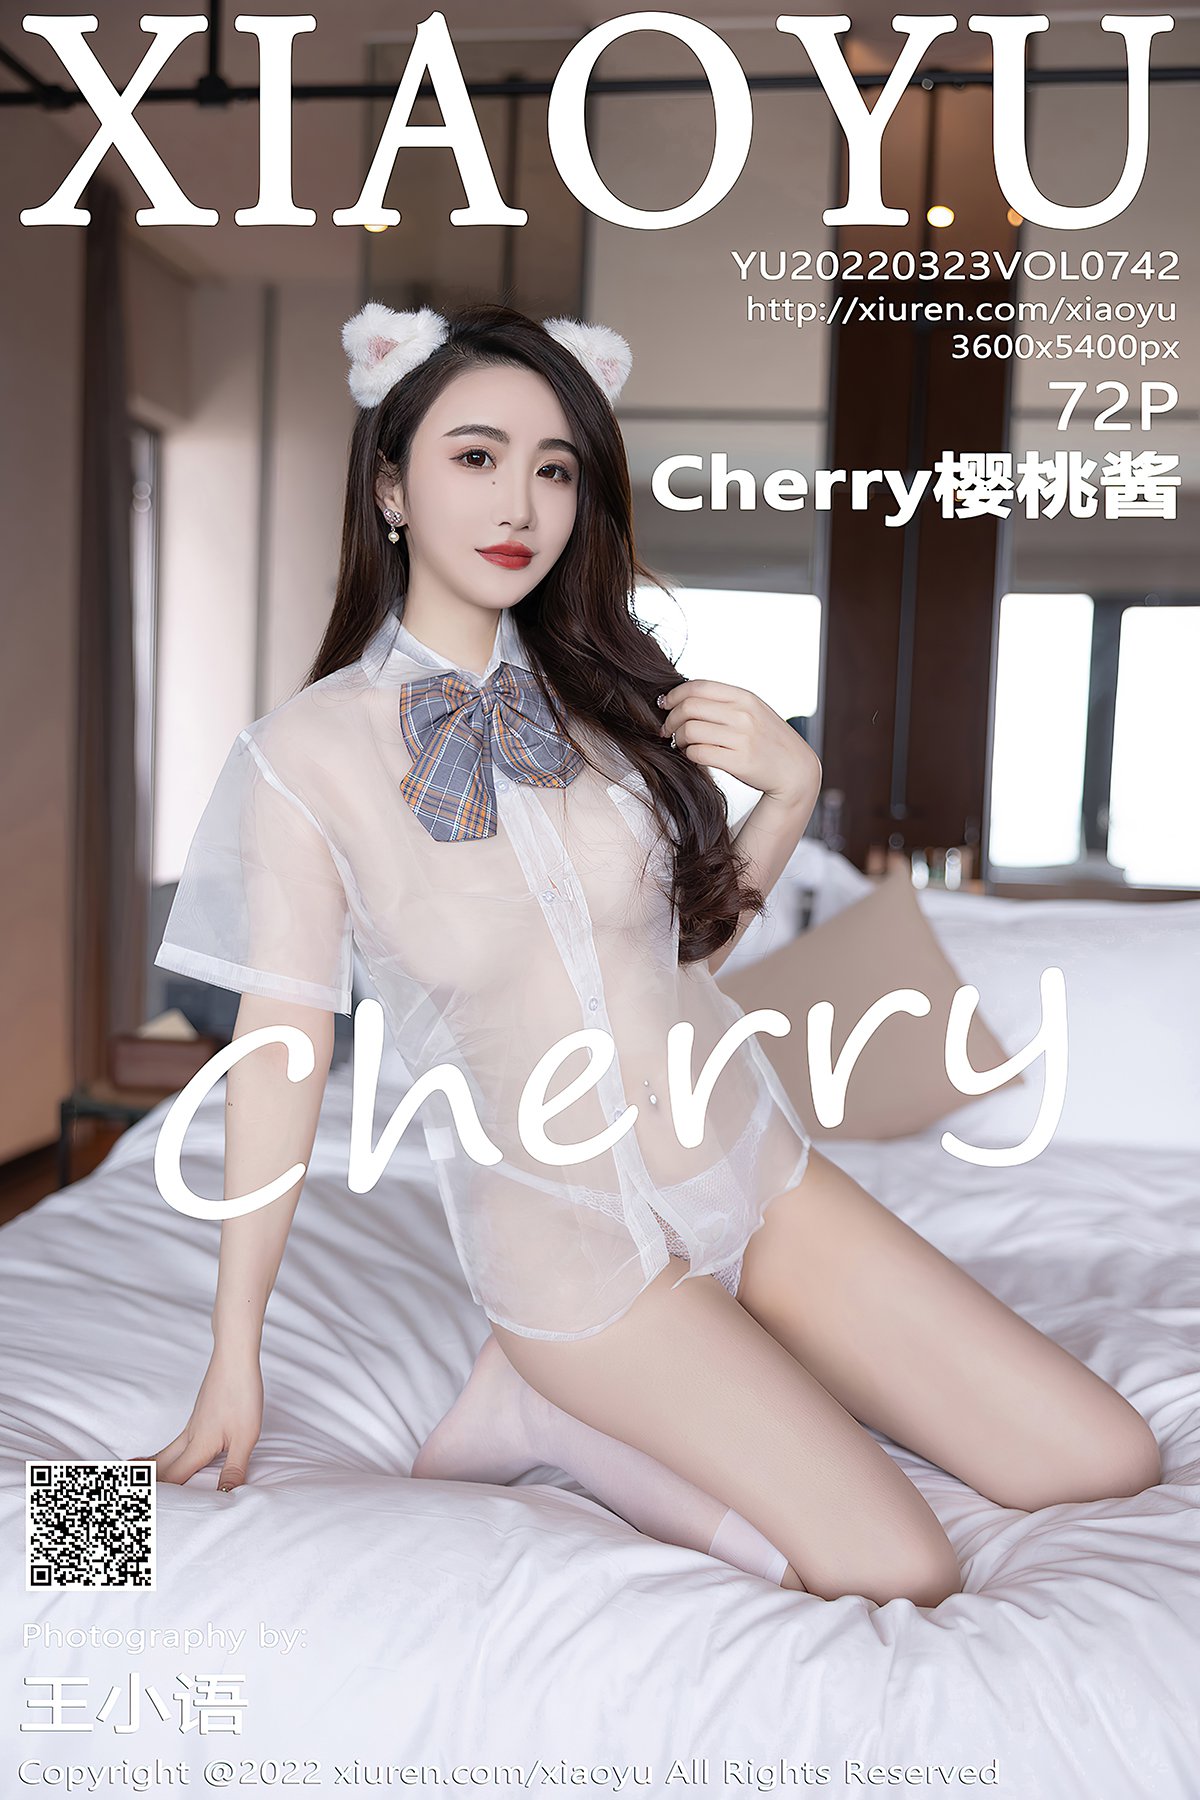 XiaoYu语画界 Vol.742 Cherry Ying Tao Jiang